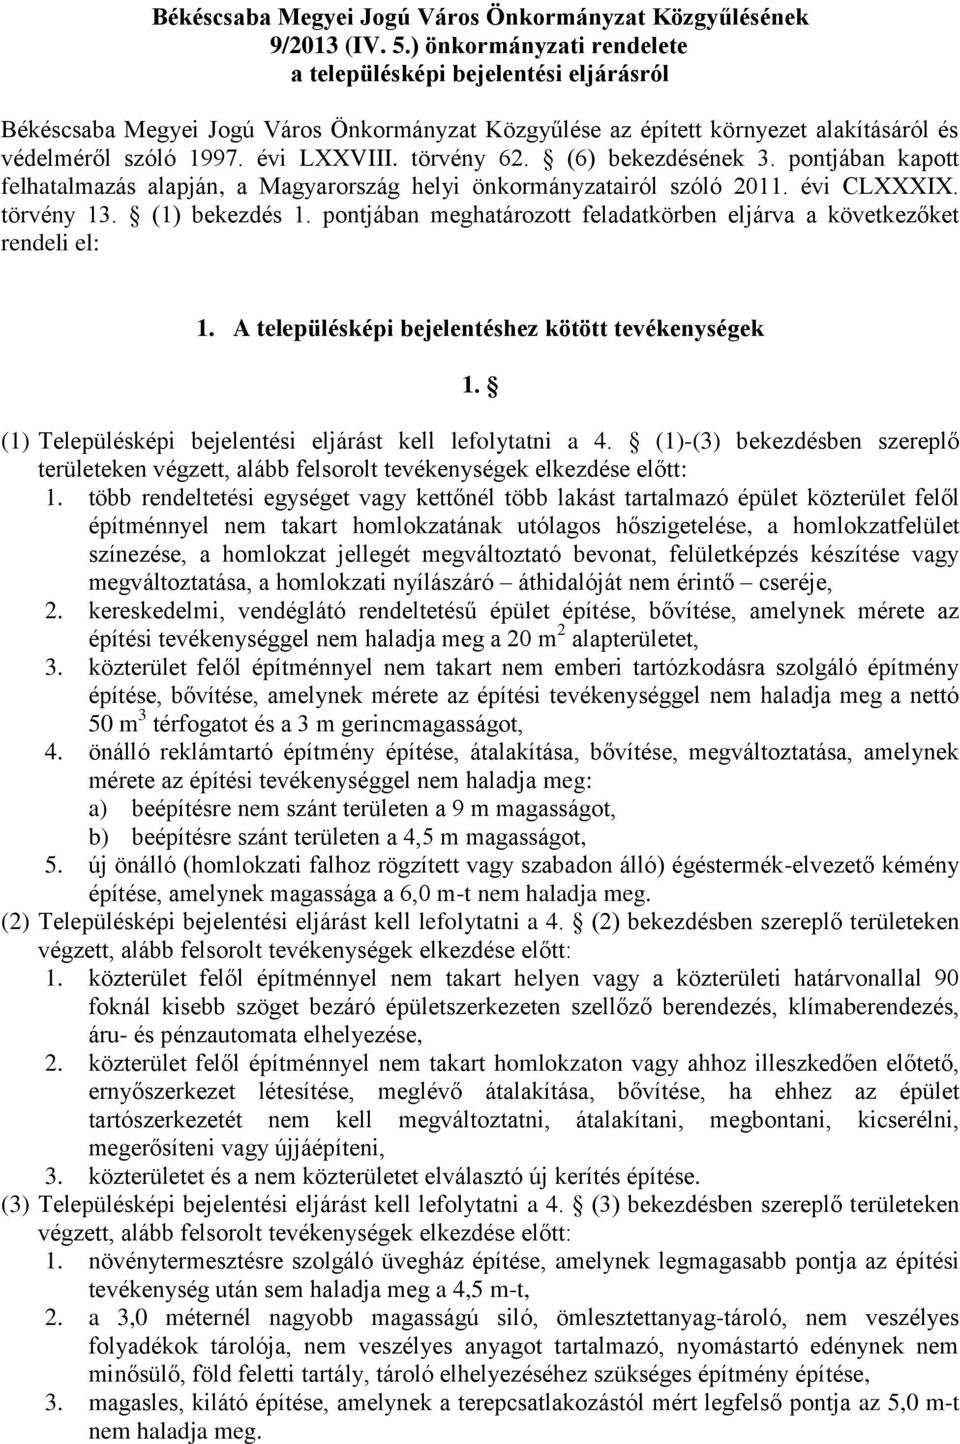 törvény 62. (6) bekezdésének 3. pontjában kapott felhatalmazás alapján, a Magyarország helyi önkormányzatairól szóló 2011. évi CLXXXIX. törvény 13. (1) bekezdés 1.